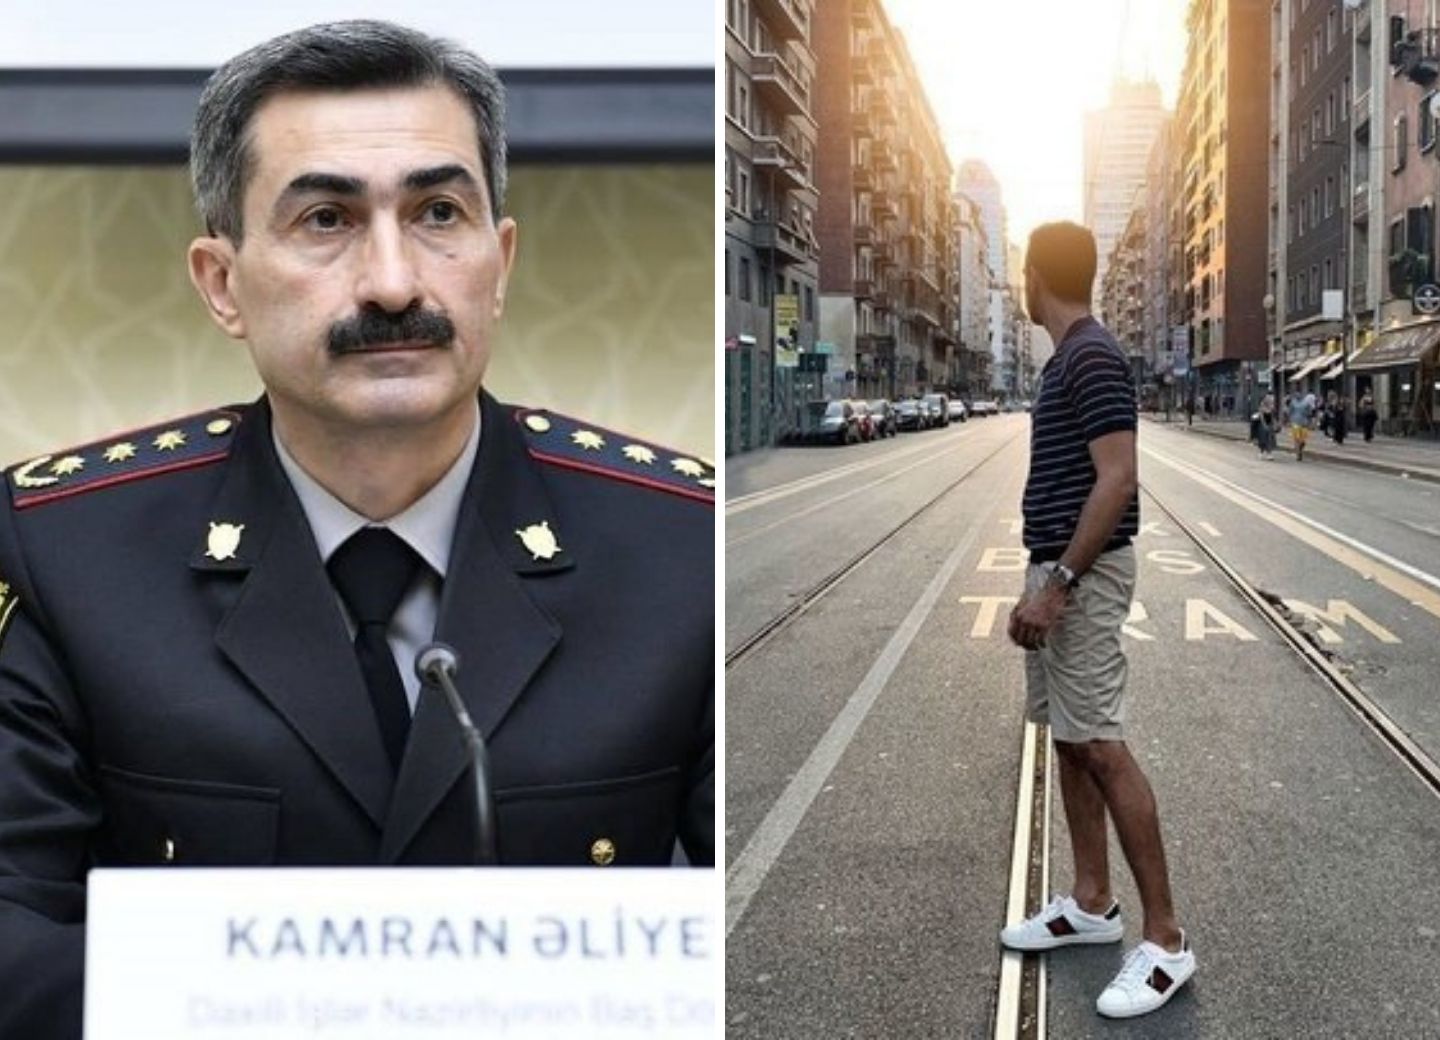 Кямран Алиев: «Женщины могут сдавать экзамен «на права» в шортах, а мужчинам запрещено»